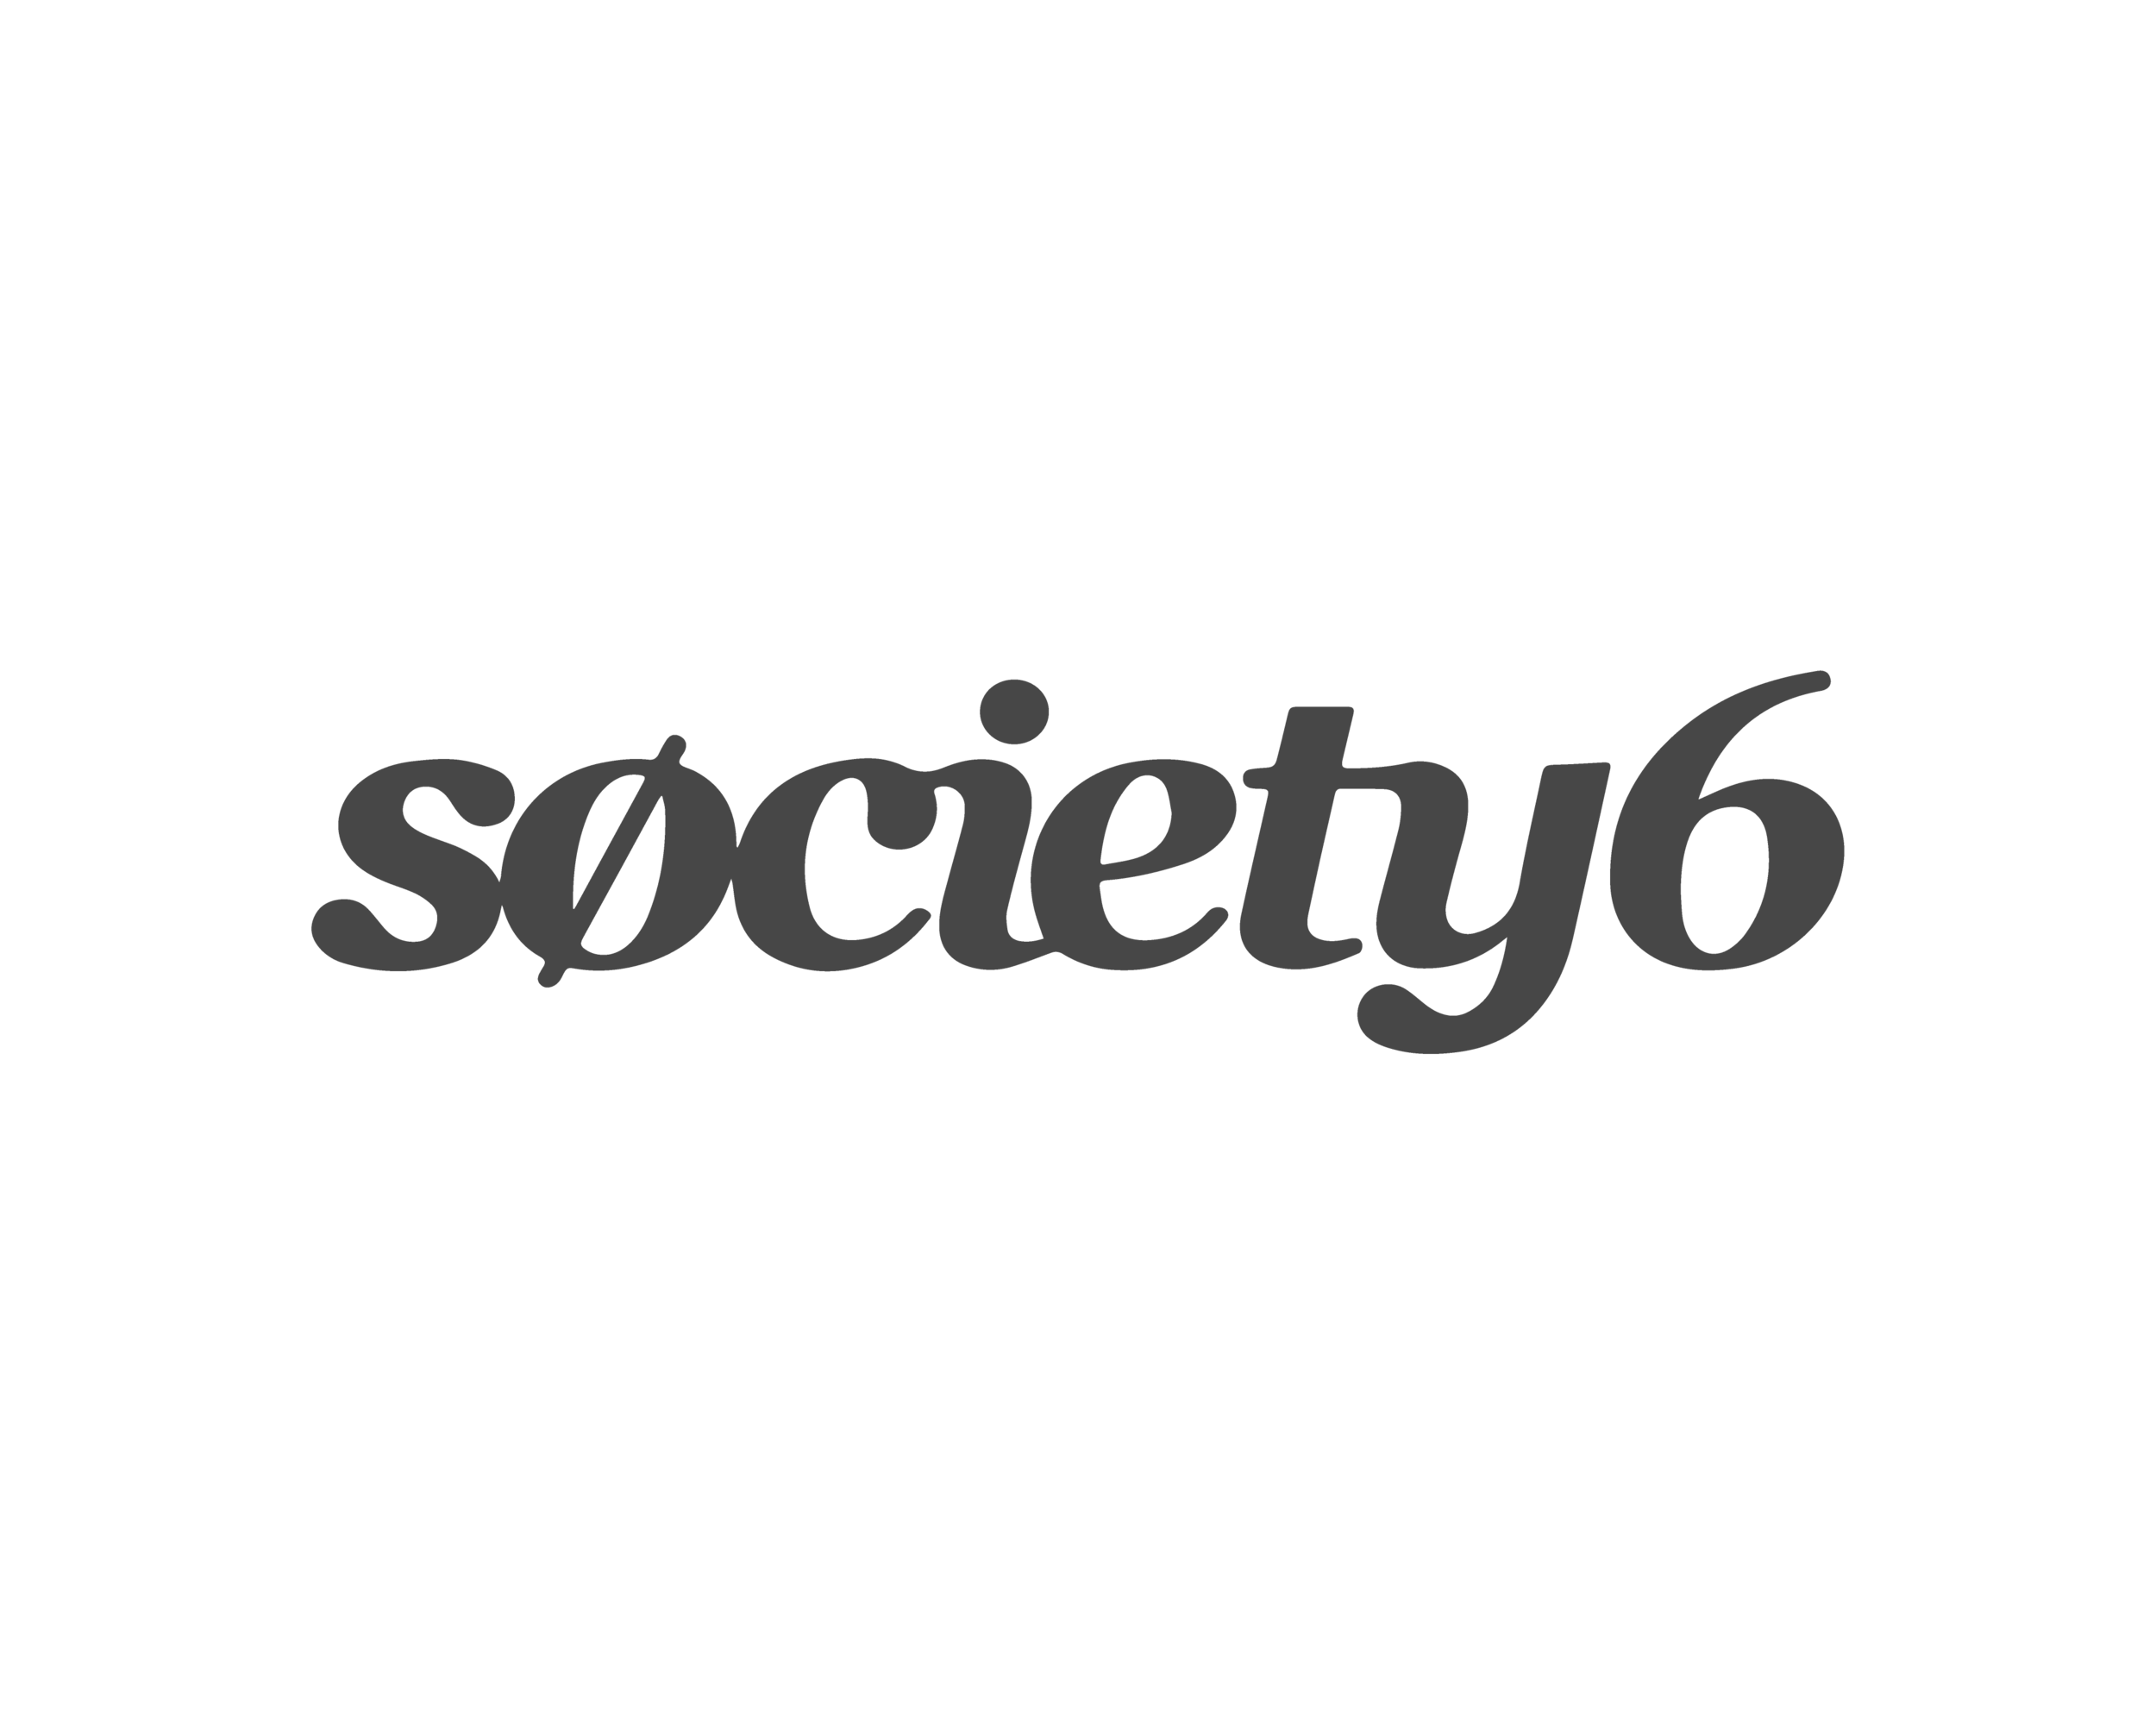 Society com. Society6. Society6 ardewish. Society6 фото. Логотип vi.